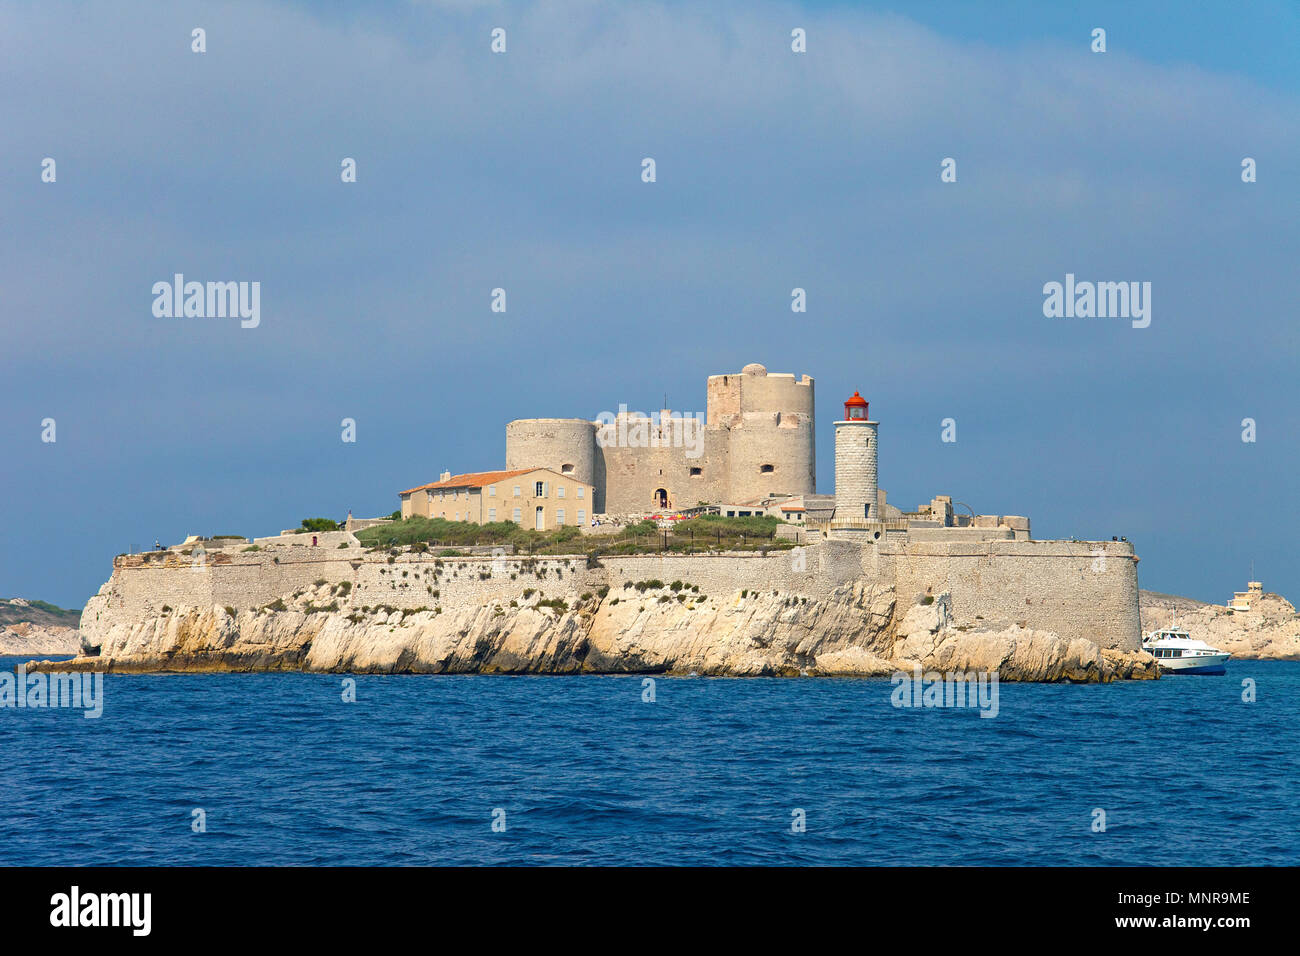 Chateau d'If auf der Île d'If, ehemaliges Gefängnis Insel in der Nähe von Marseille, Bouches-du-Rhône der Region Provence-Alpes-Côte d'Azur, Südfrankreich, Frankreich, Europa Stockfoto